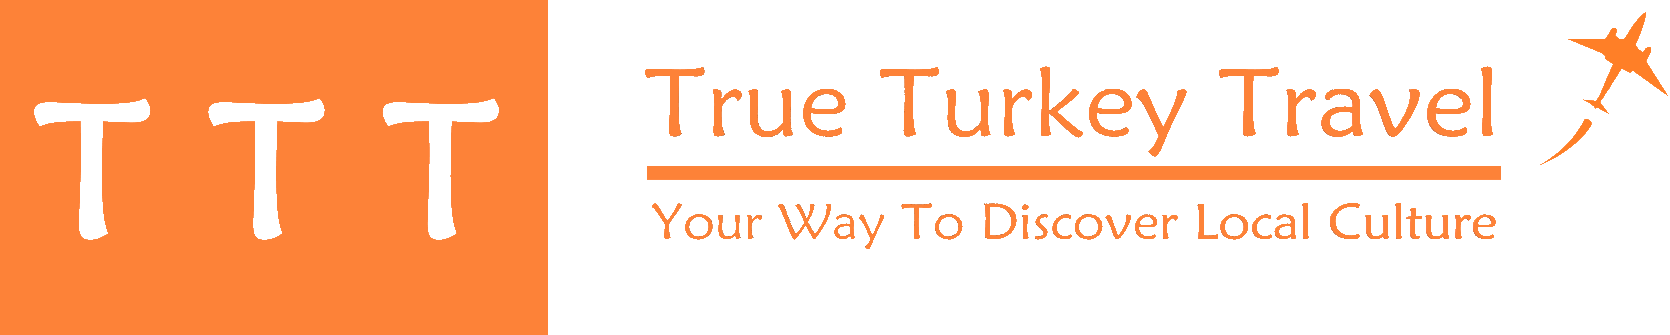 TrueTurkeyTravel logo